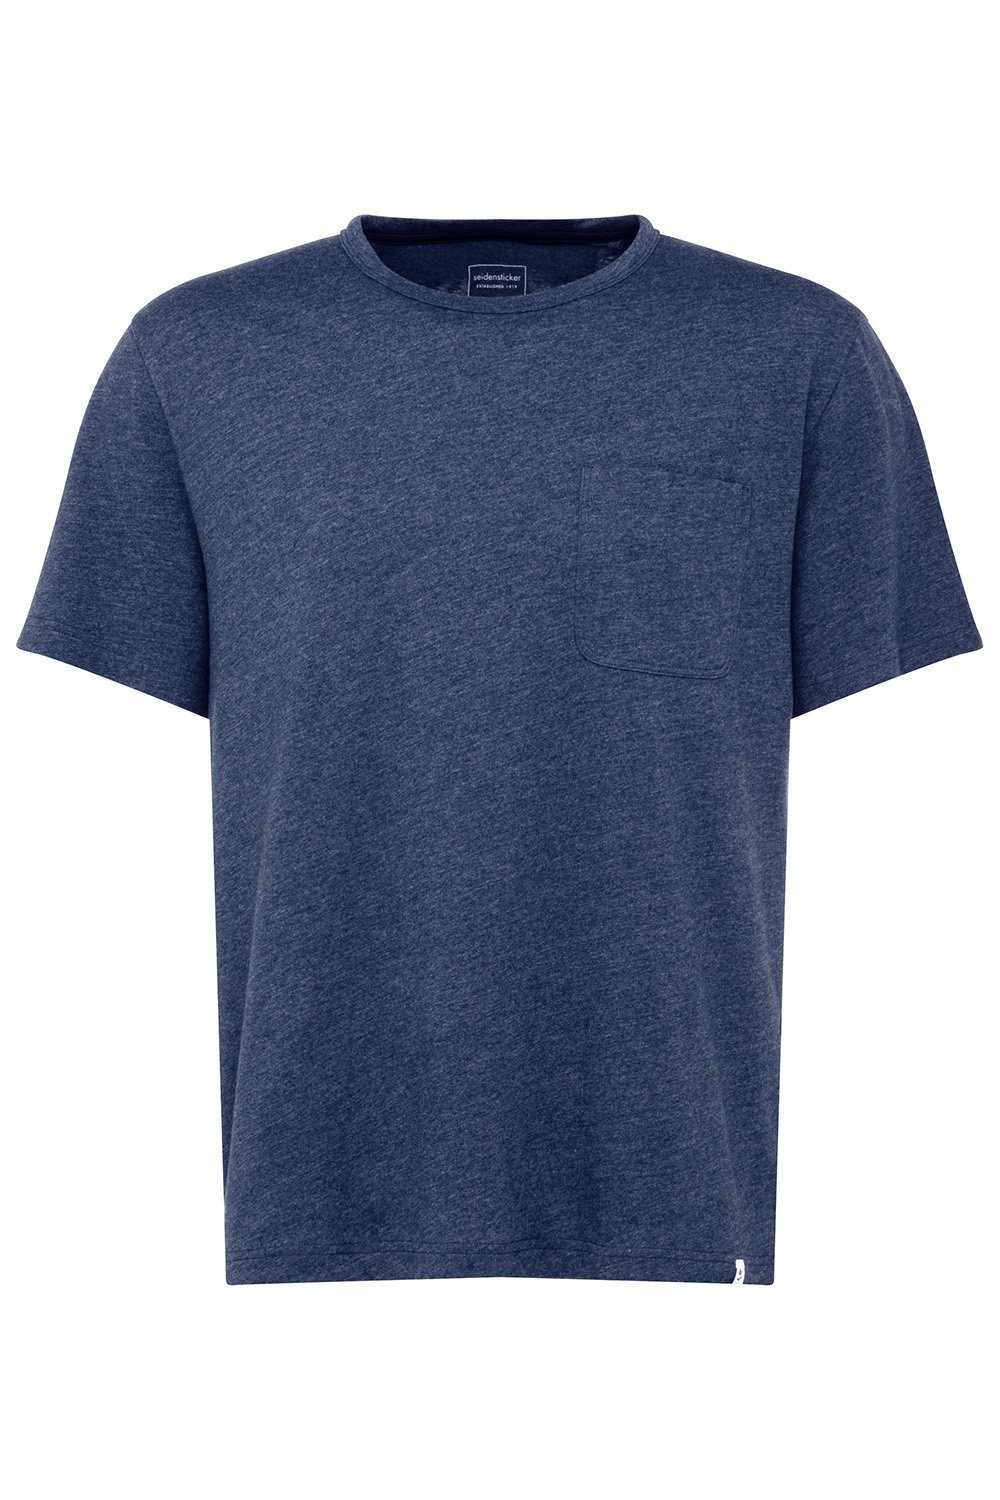 seidensticker Kurzarmshirt T-Shirt 106750